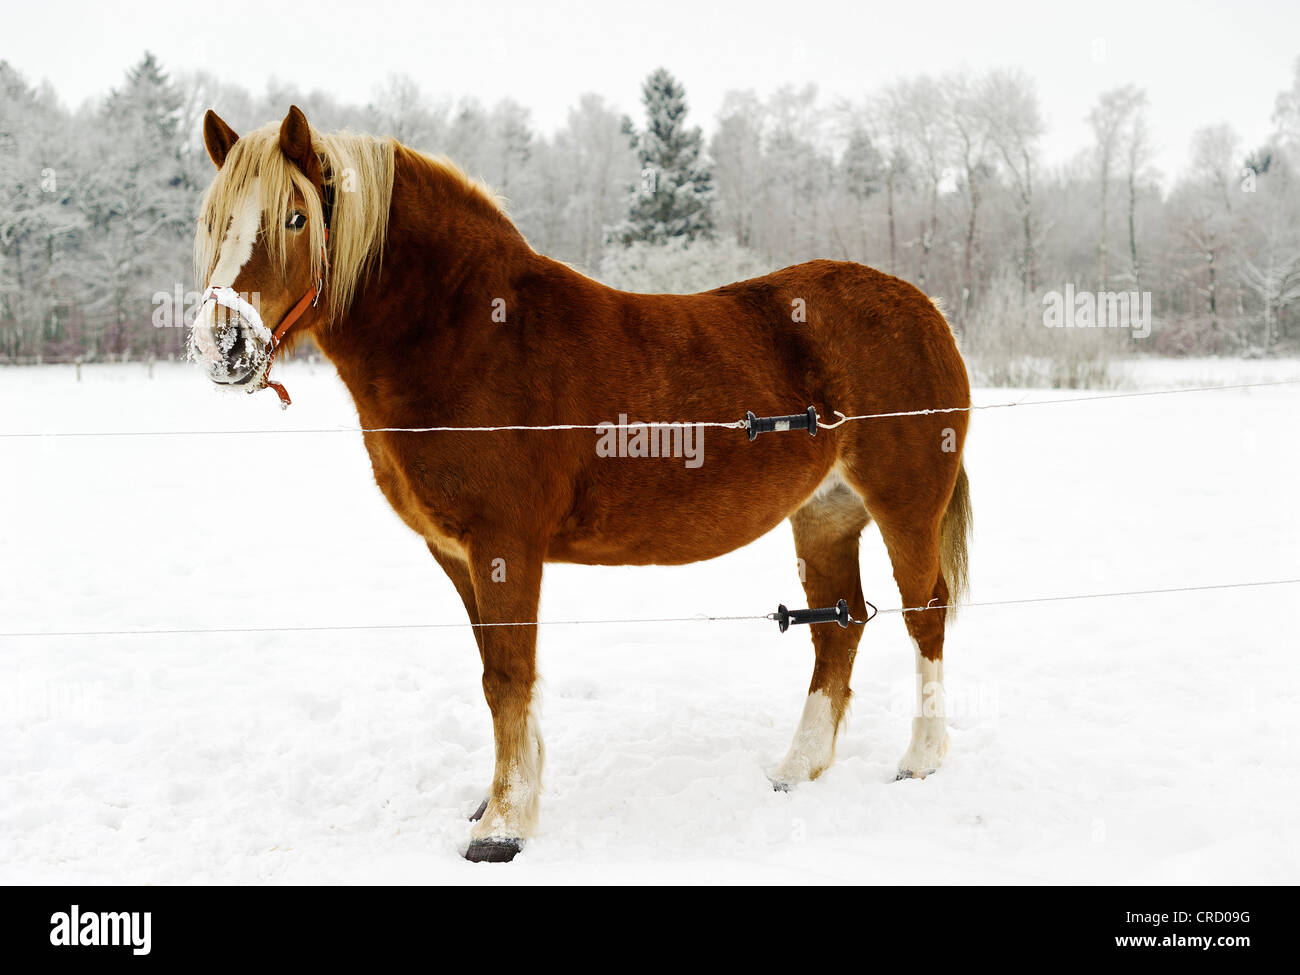 Horse on pasture, Muehlenbeck, Mecklenburg-Western Pomerania, Germany, Europe Stock Photo